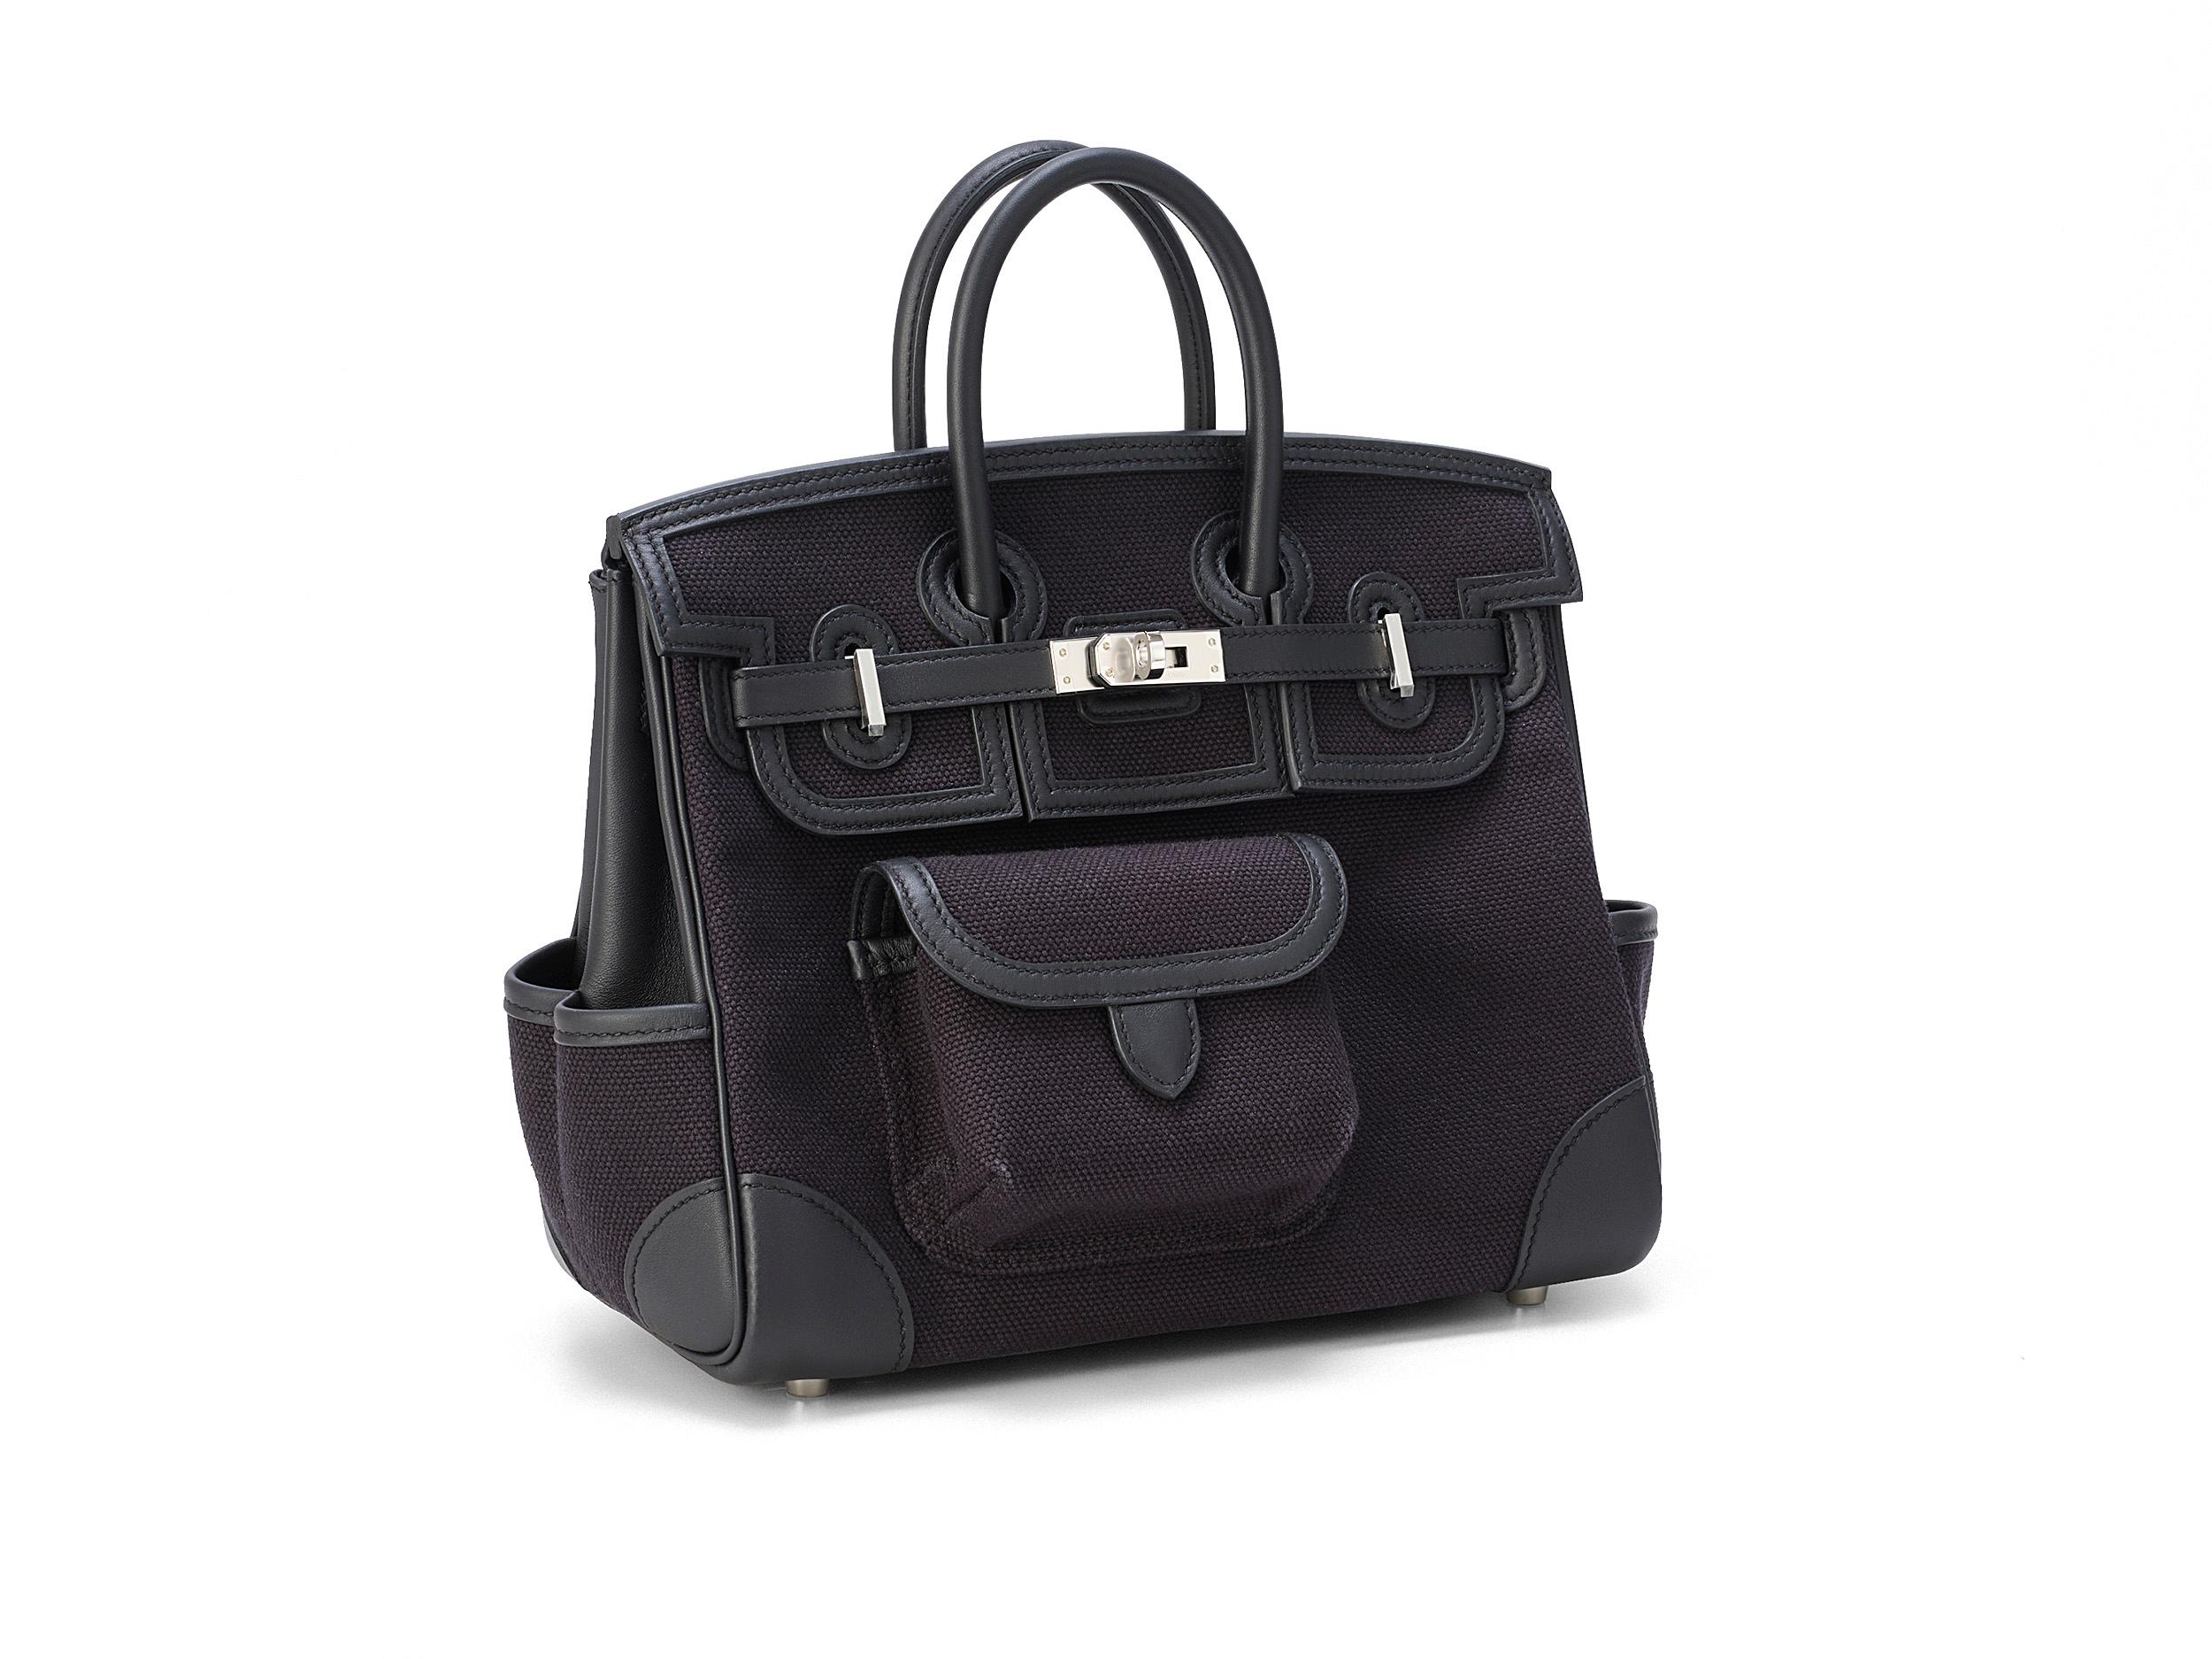 Hermès Birkin Cargo 25 aus schwarzem Segeltuch und Swift-Leder mit Palladium-Beschlägen. Die Tasche ist ungetragen und kommt als komplettes Set mit dem Originalbeleg.

Stempel U (2022) 

